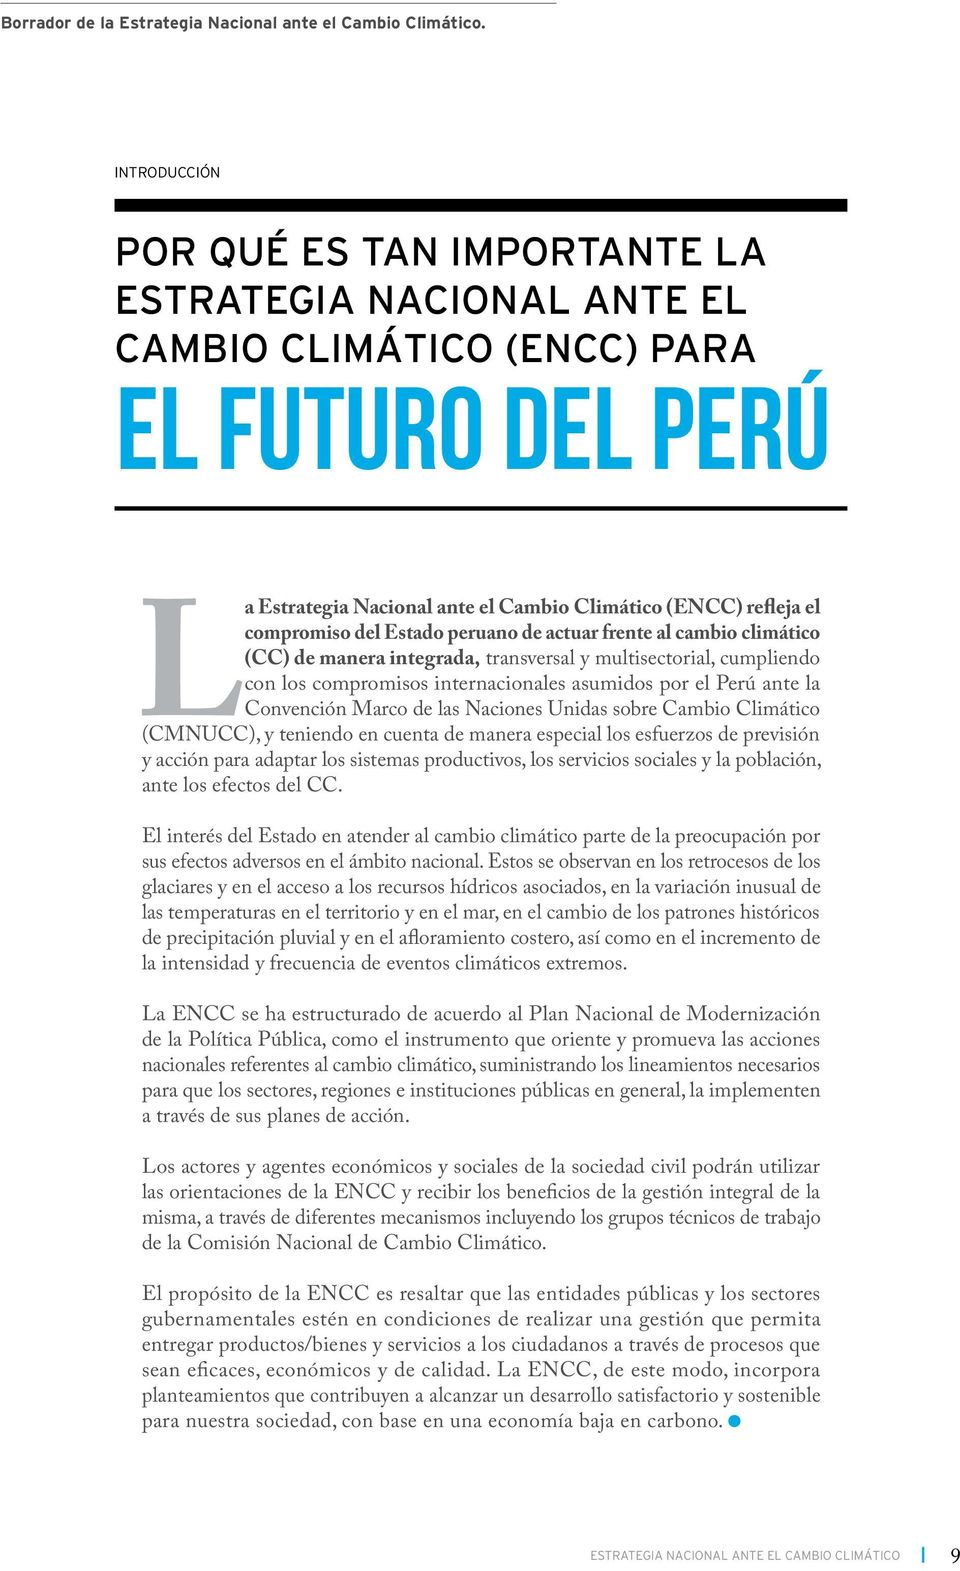 Estado peruano de actuar frente al cambio climático (CC) de manera integrada, transversal y multisectorial, cumpliendo con los compromisos internacionales asumidos por el Perú ante la Convención